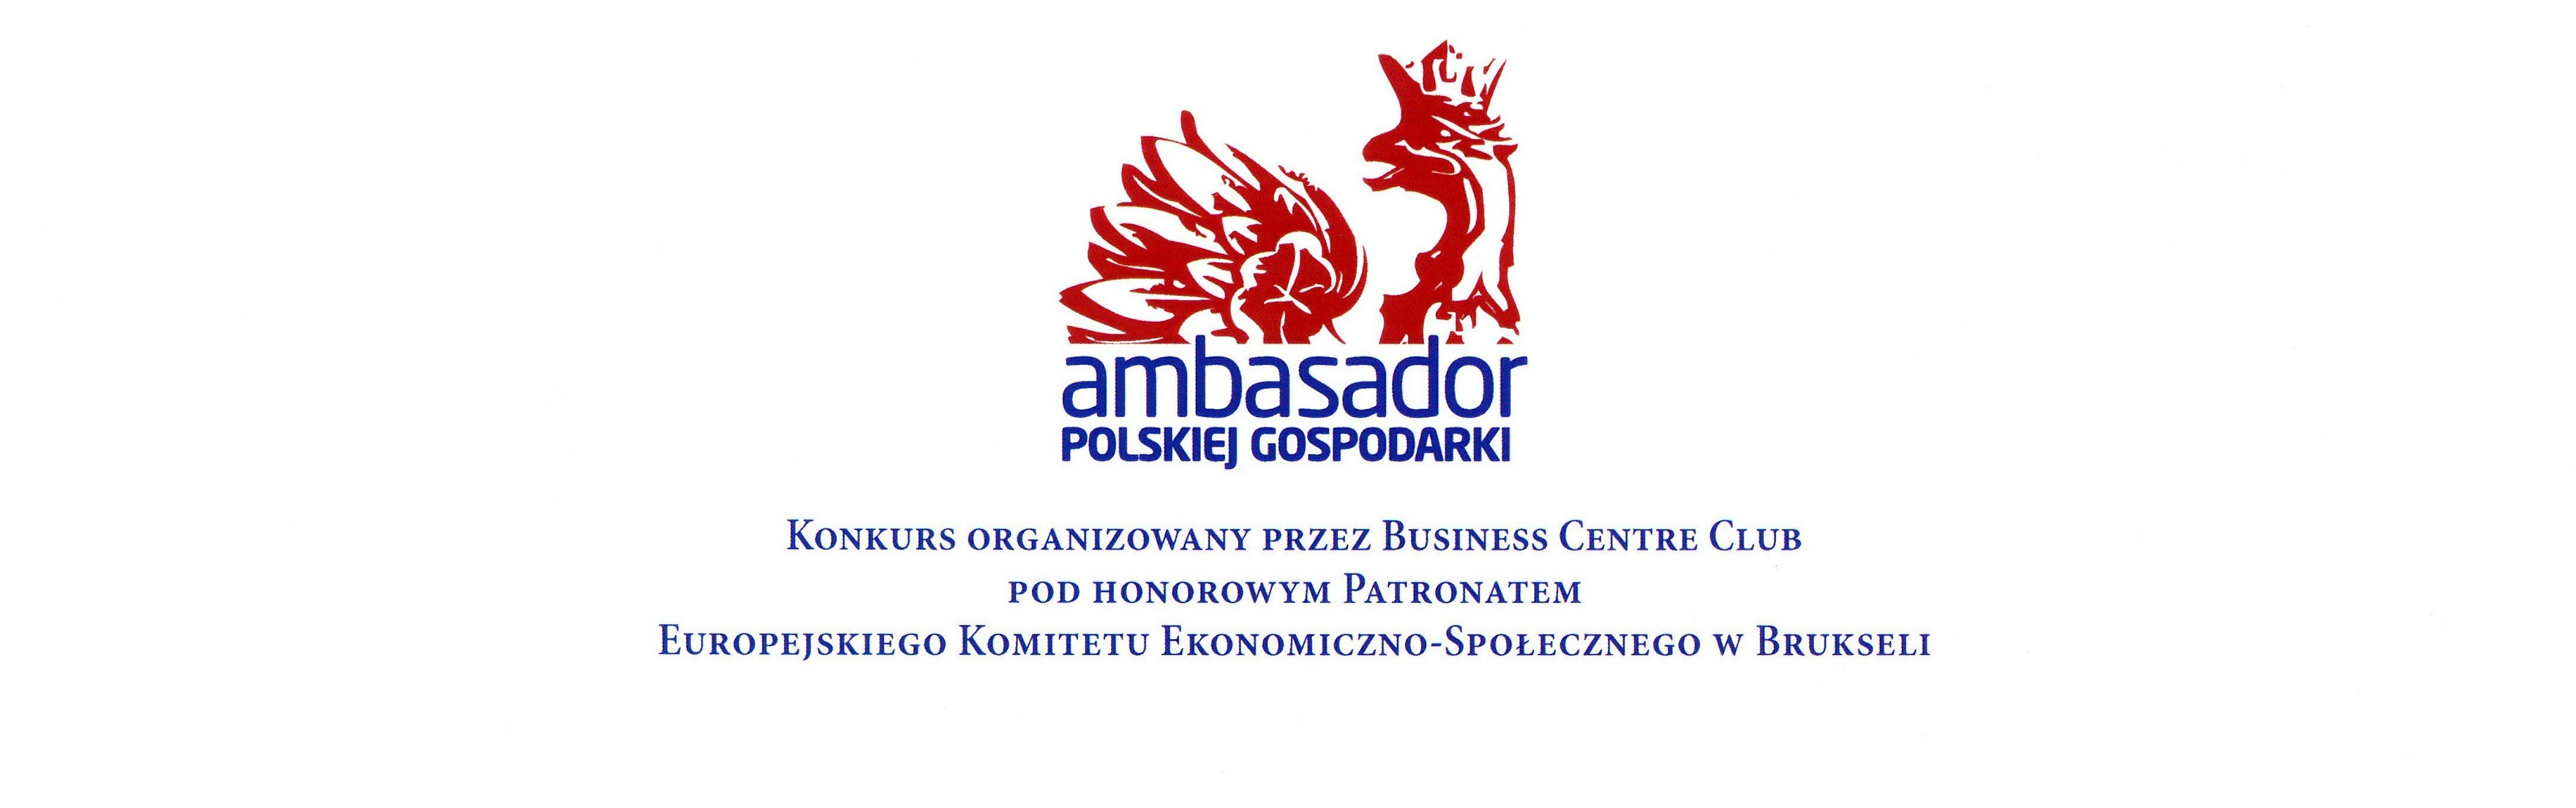 Drutex è stata insignita del titolo di Ambasciatore dell’Economia Polacca